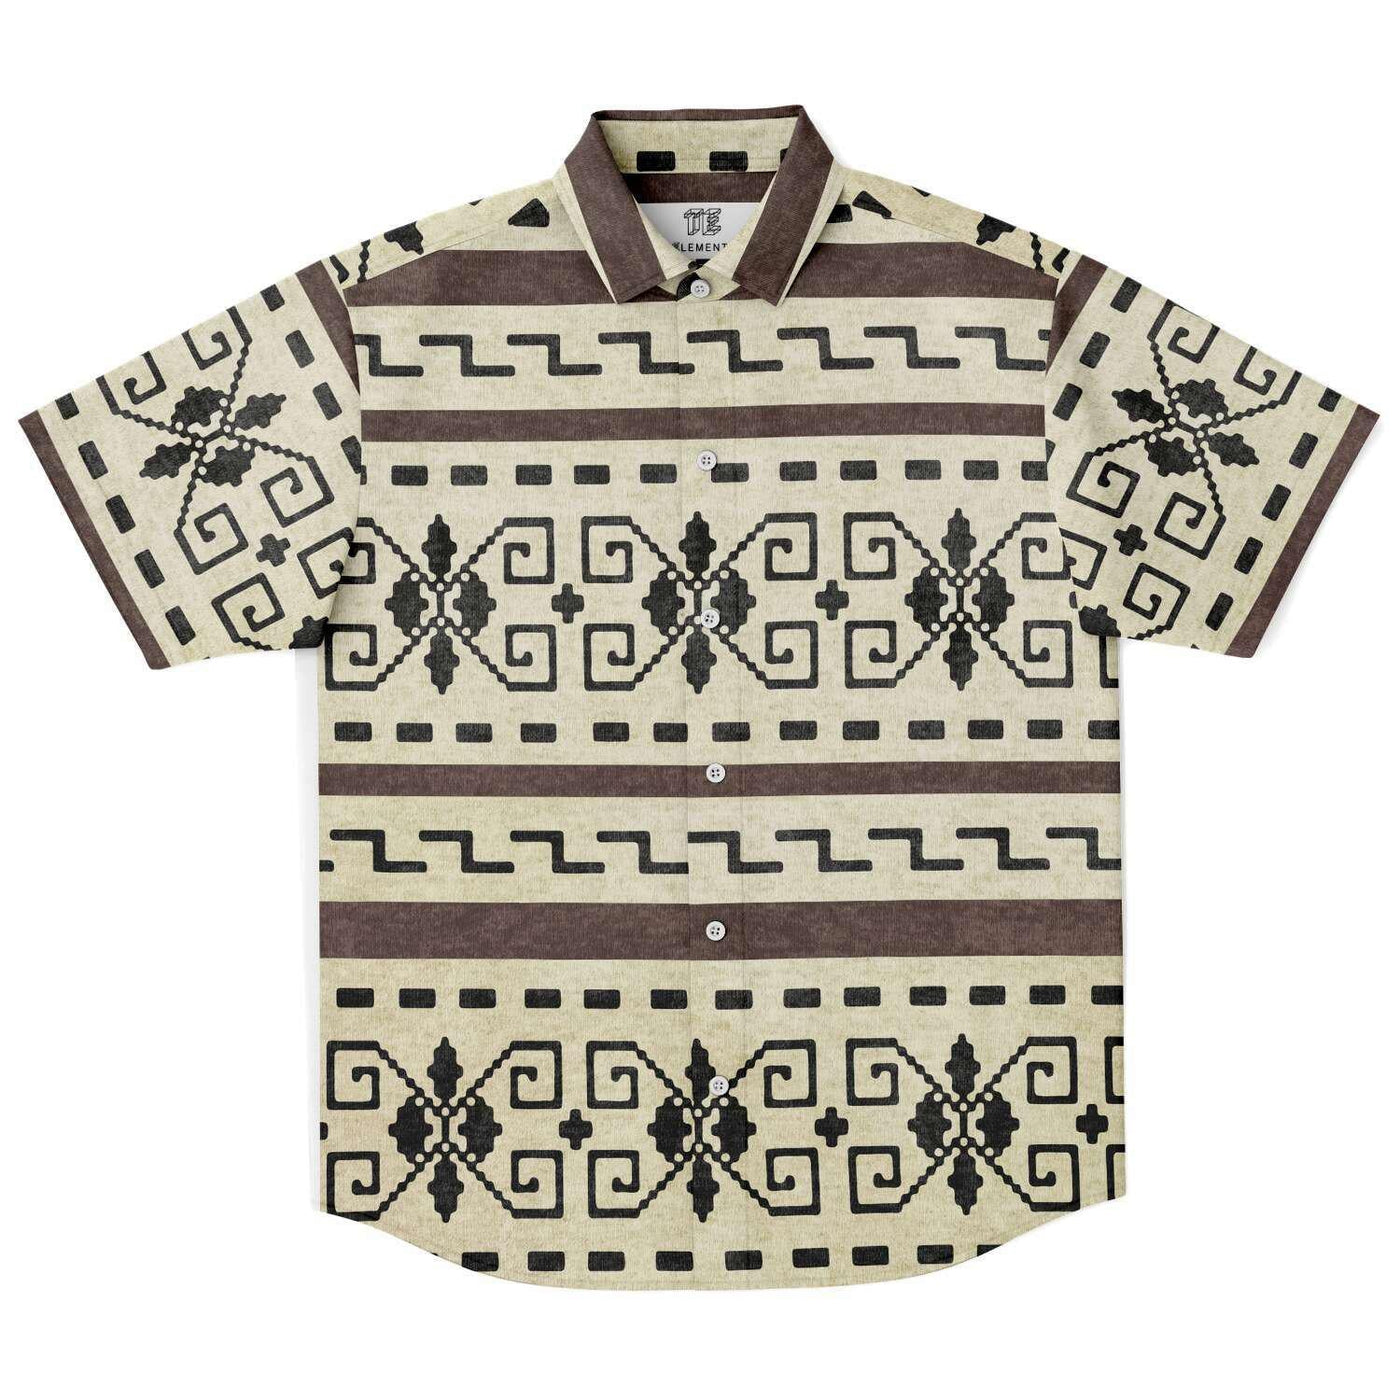 The Dude's Shirt V2 | Short Sleeves Lebowski Shirt